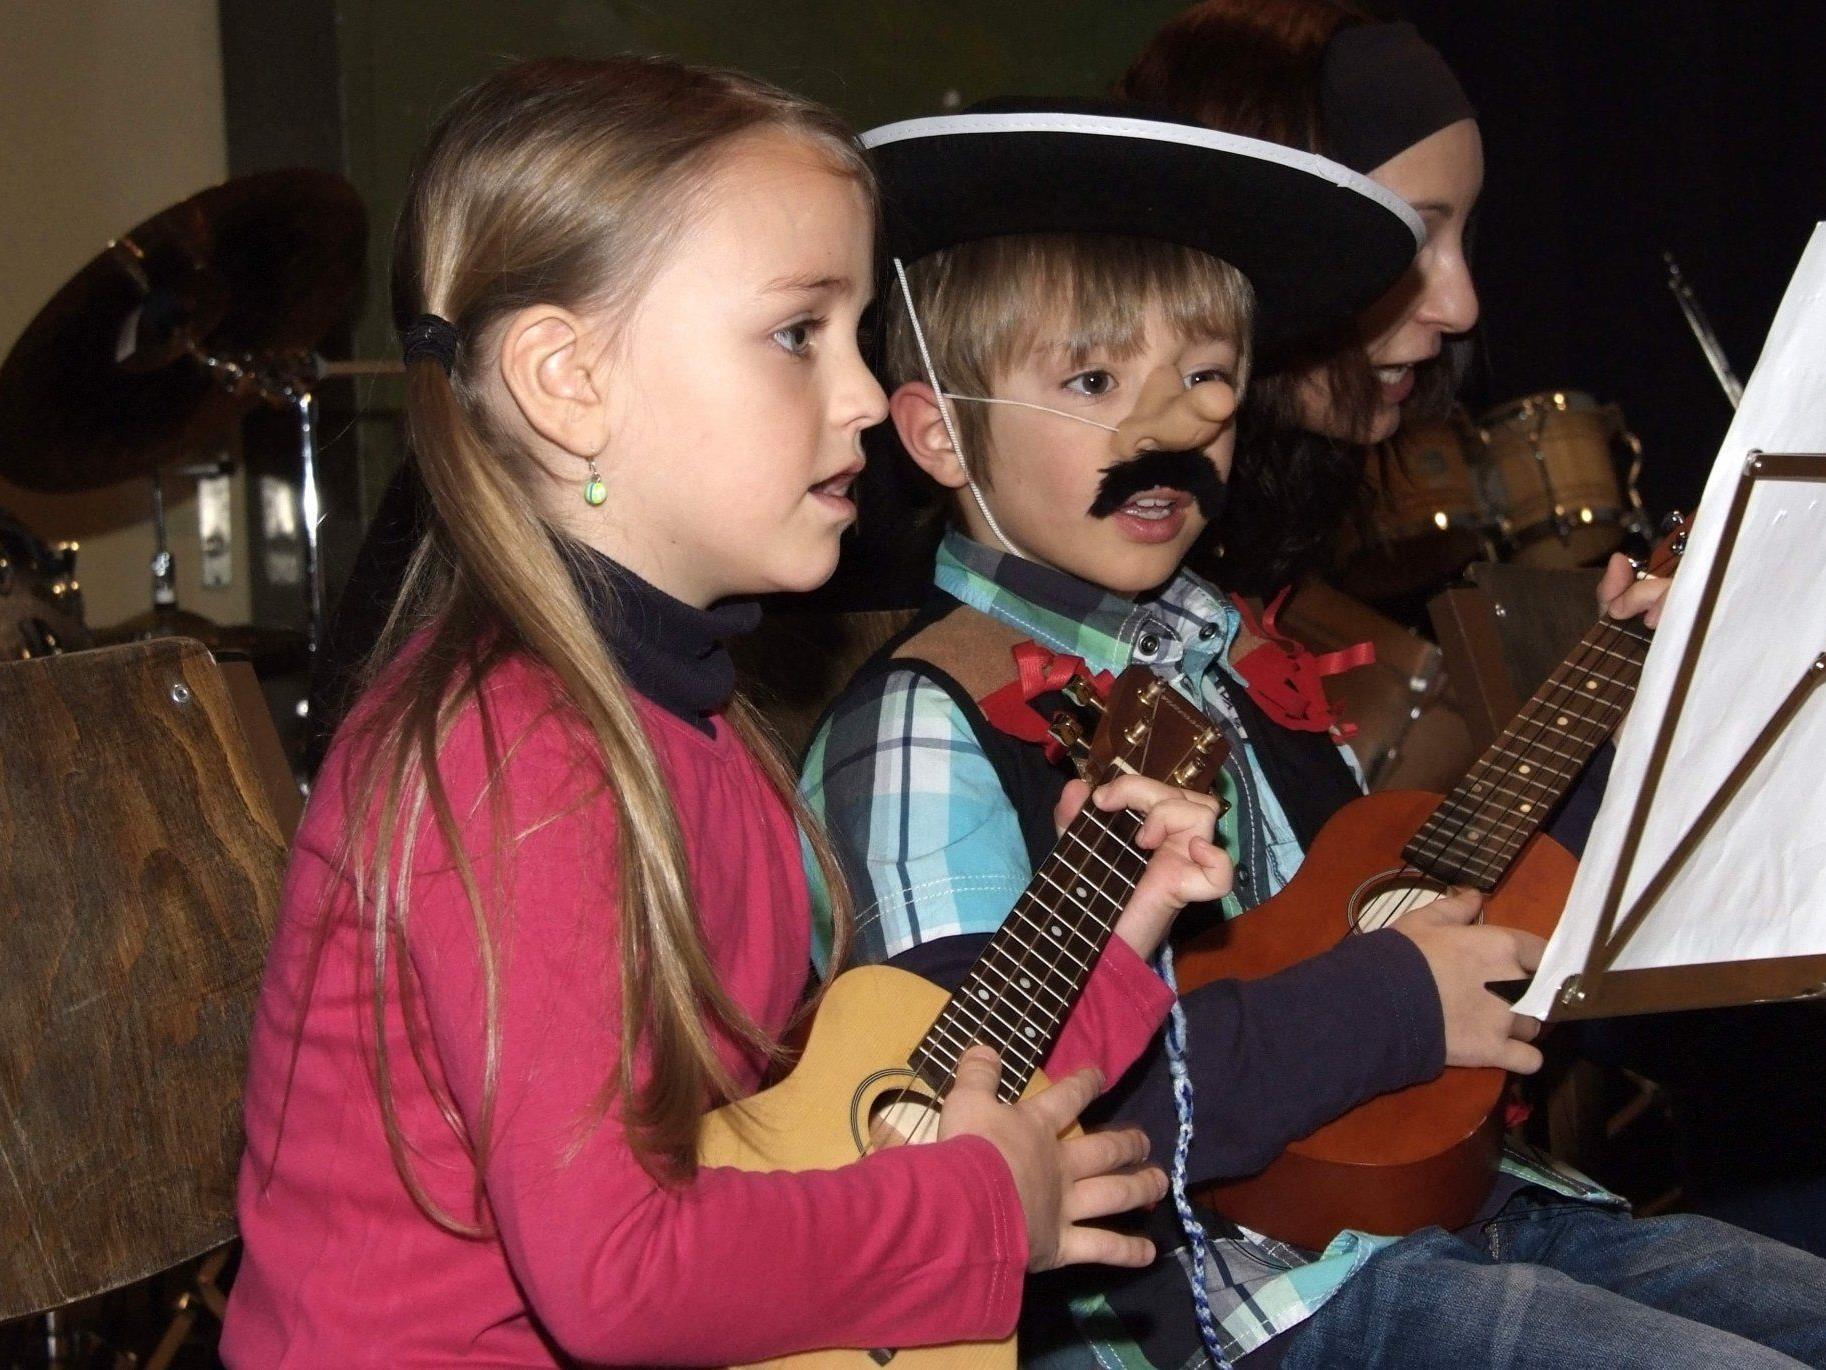 Singen und Spielen gleichzeitig ist für die kleinen Ukulele-Künstler kein Problem.